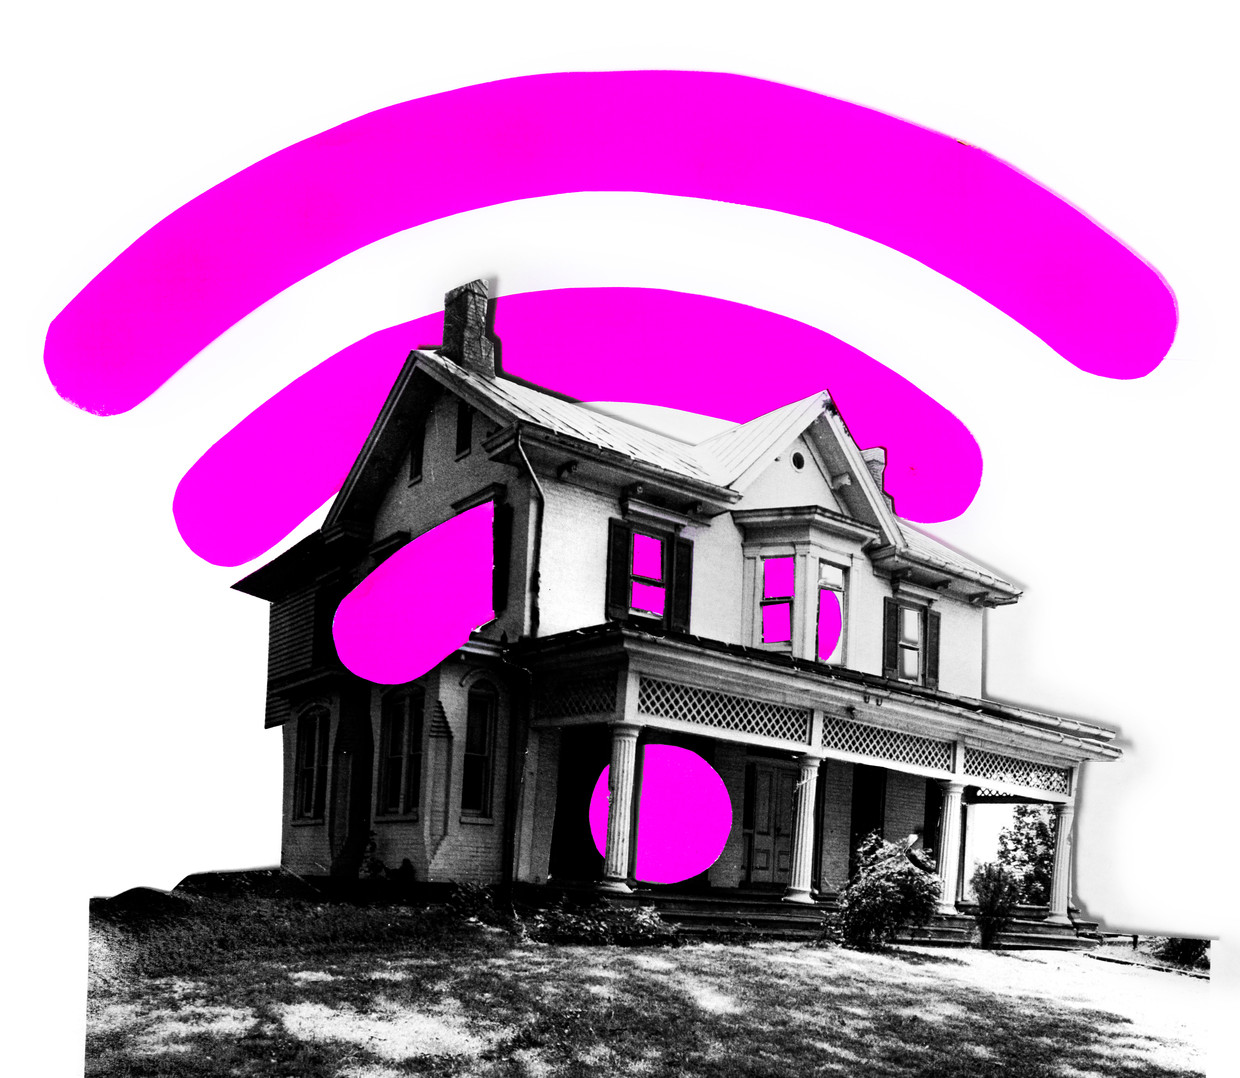 Maakt de nieuwe versie van wifi een einde aan internet thuis? | De Volkskrant